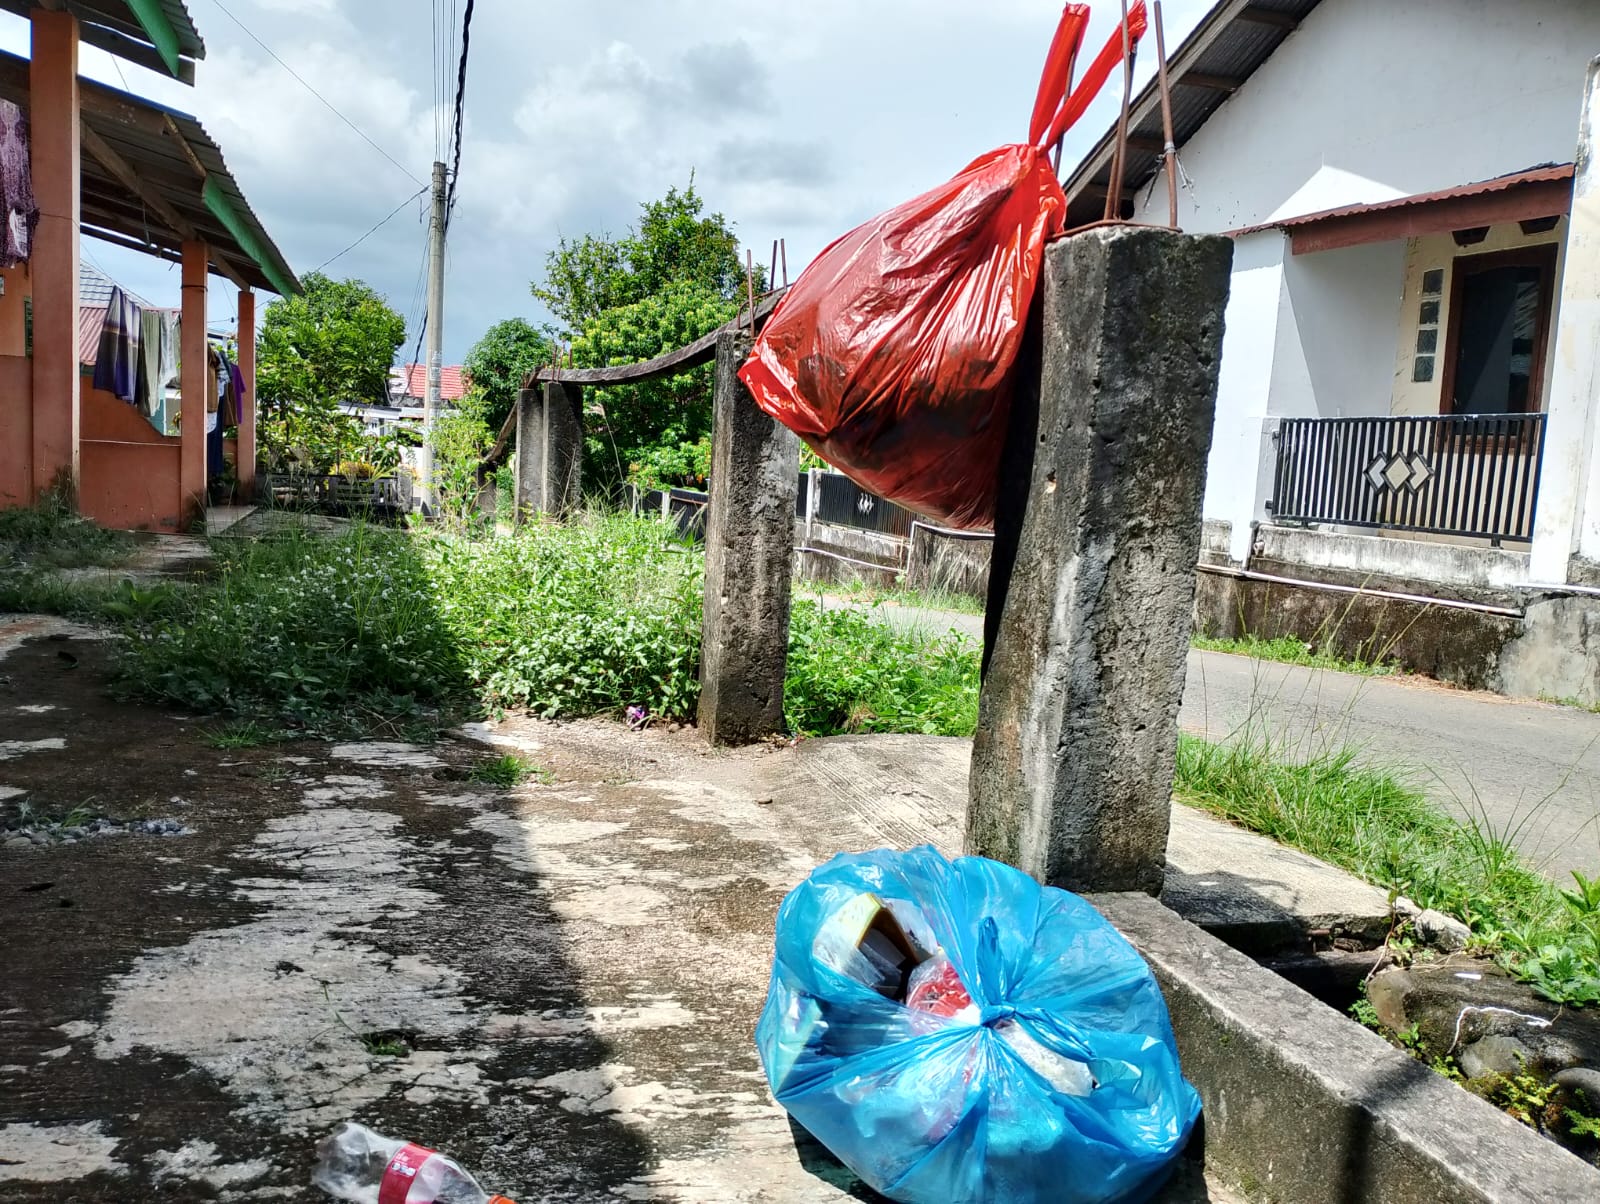 Masyarakat Kota Bengkulu Kebingungan Mau Membuang Sampah, Pemkot Jangan Diam Saja